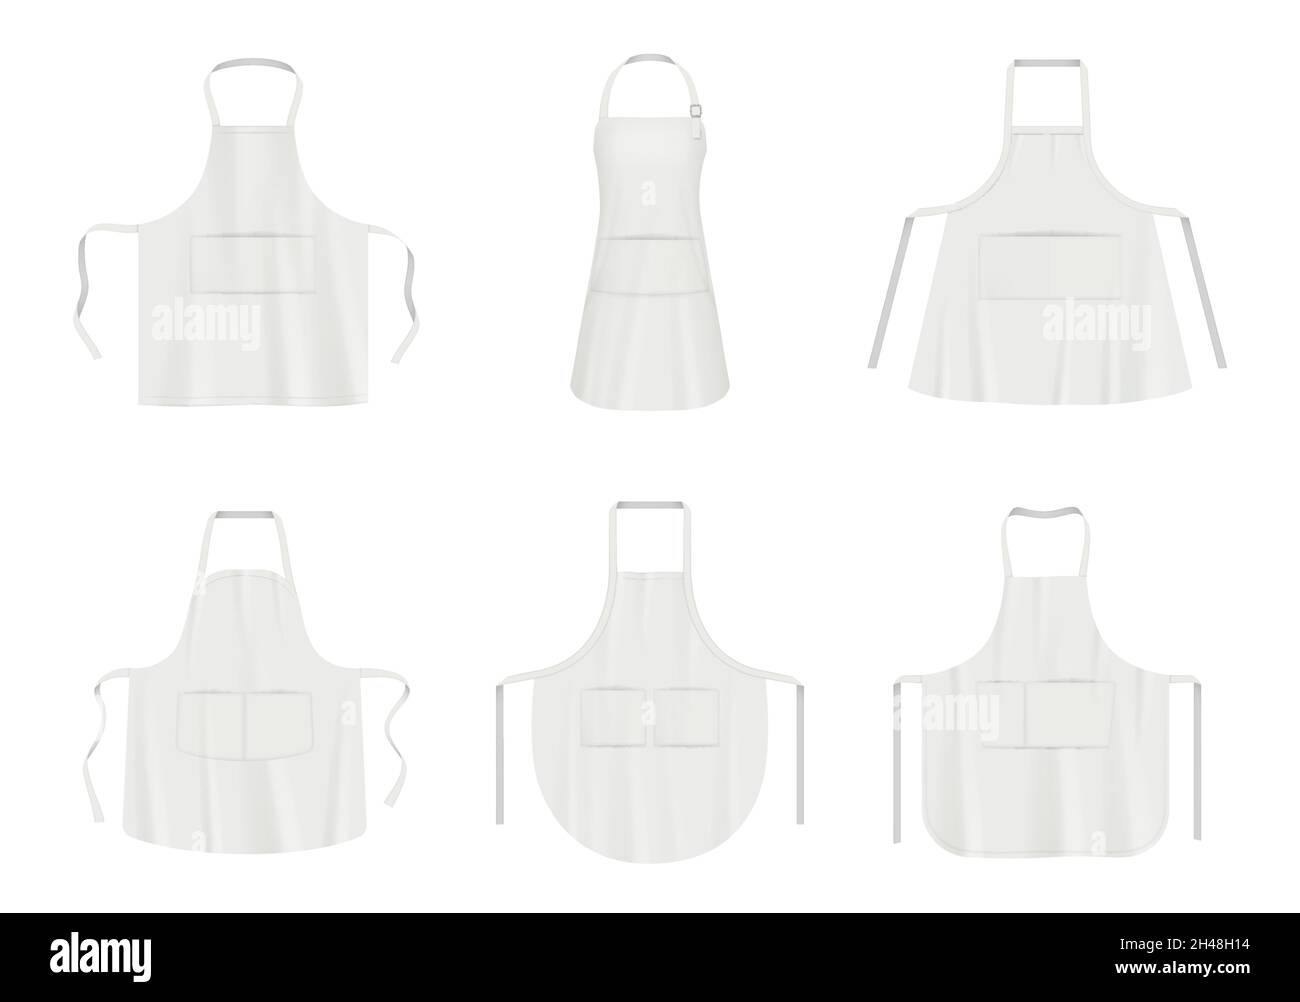 Tablier de cuisine.Vêtements en tissu noir et blanc pour cuisinier professionnel cuisinier réaliste tablier décent vecteur illustration photos modèles Illustration de Vecteur